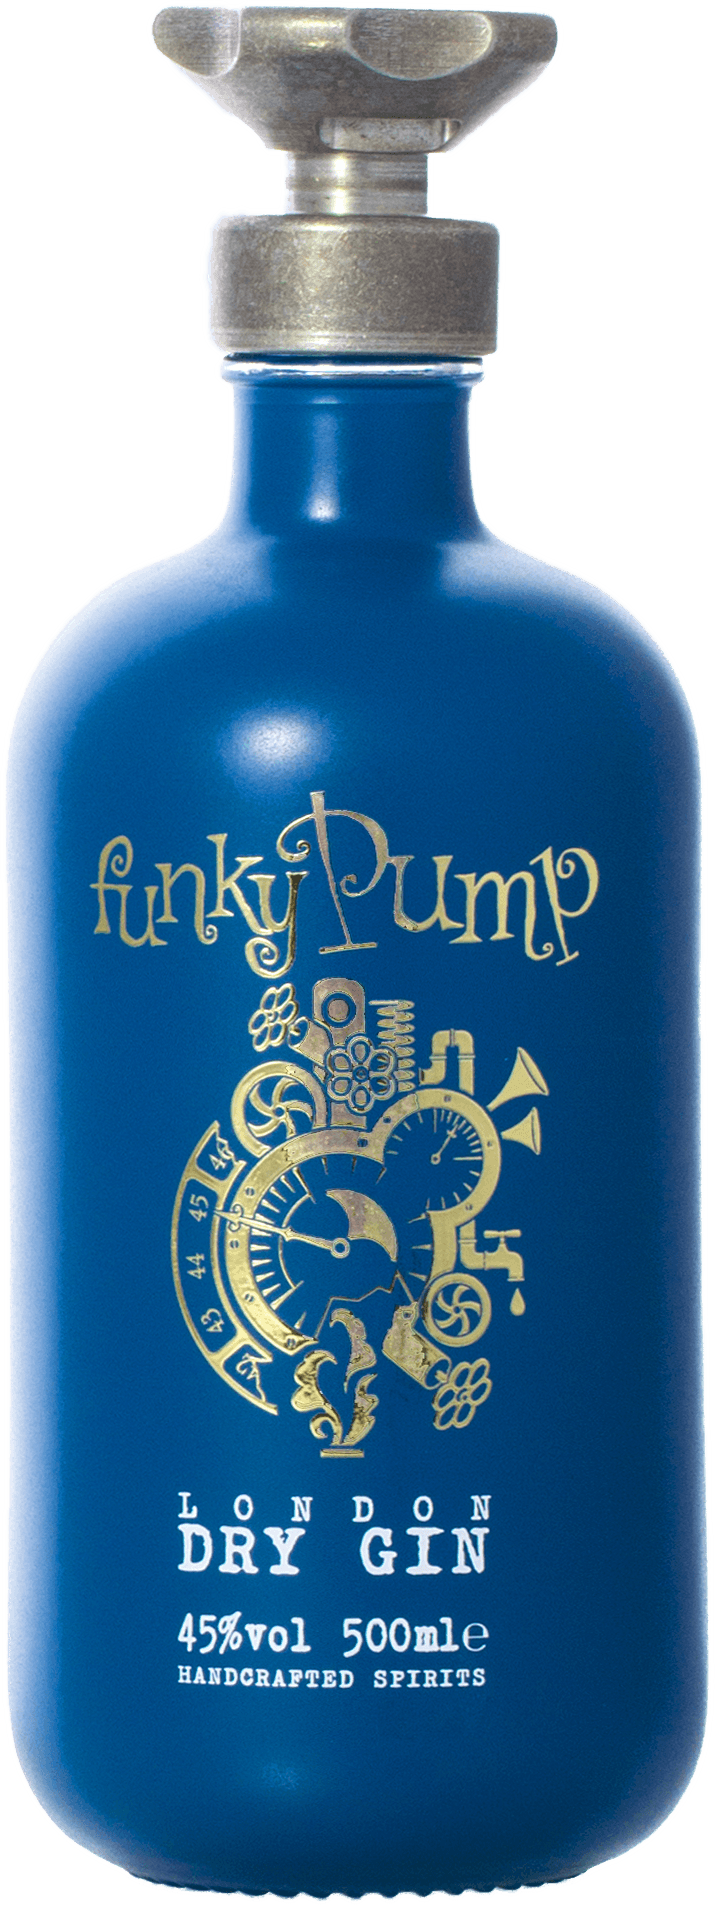 "Funky Pump London Dry Gin aus Tirol - 45% vol. Alkoholgehalt, hergestellt aus 15 ausgewählten Botanicals in der Lechtaler Haussegen Destillerie."